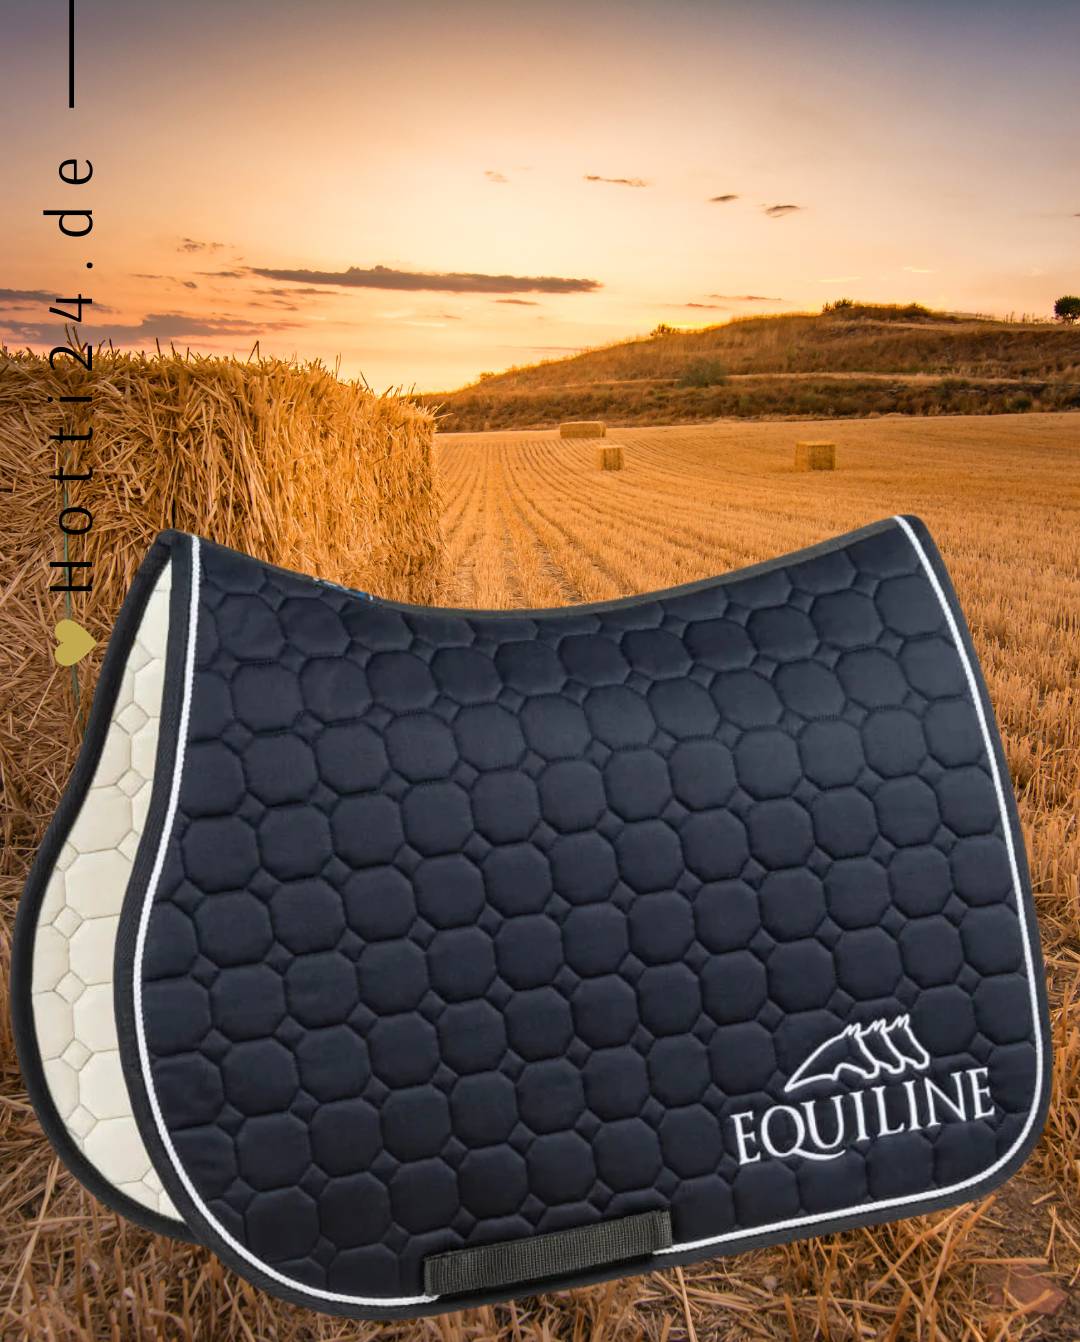 Pferde Springschabracke "Outline" von EQUILINE in der Farbe Blau mit der Artikelnummer B01042-N-002. Diese Springschabracke wurde speziell entwickelt, um Ihrem Pferd während des Springreitens einen eleganten und komfortablen Sitz zu bieten. Sie können diese Pferde Springschabracke auf der Website www.hotti24.de erwerben.